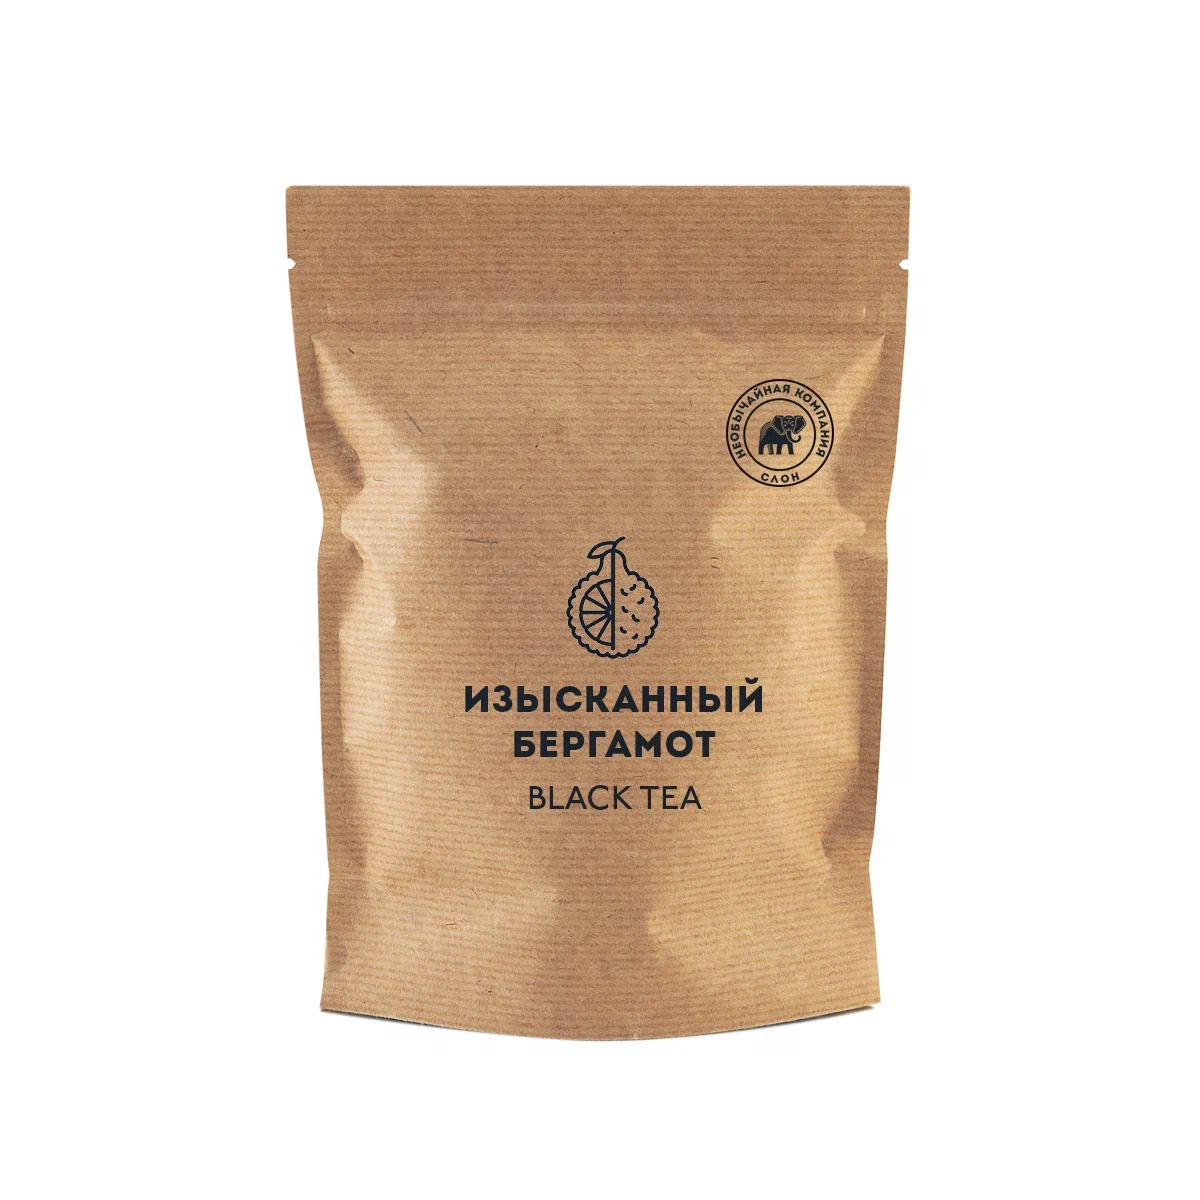 Чай чёрный Слон ароматизированный, изысканный бергамот, 50 г